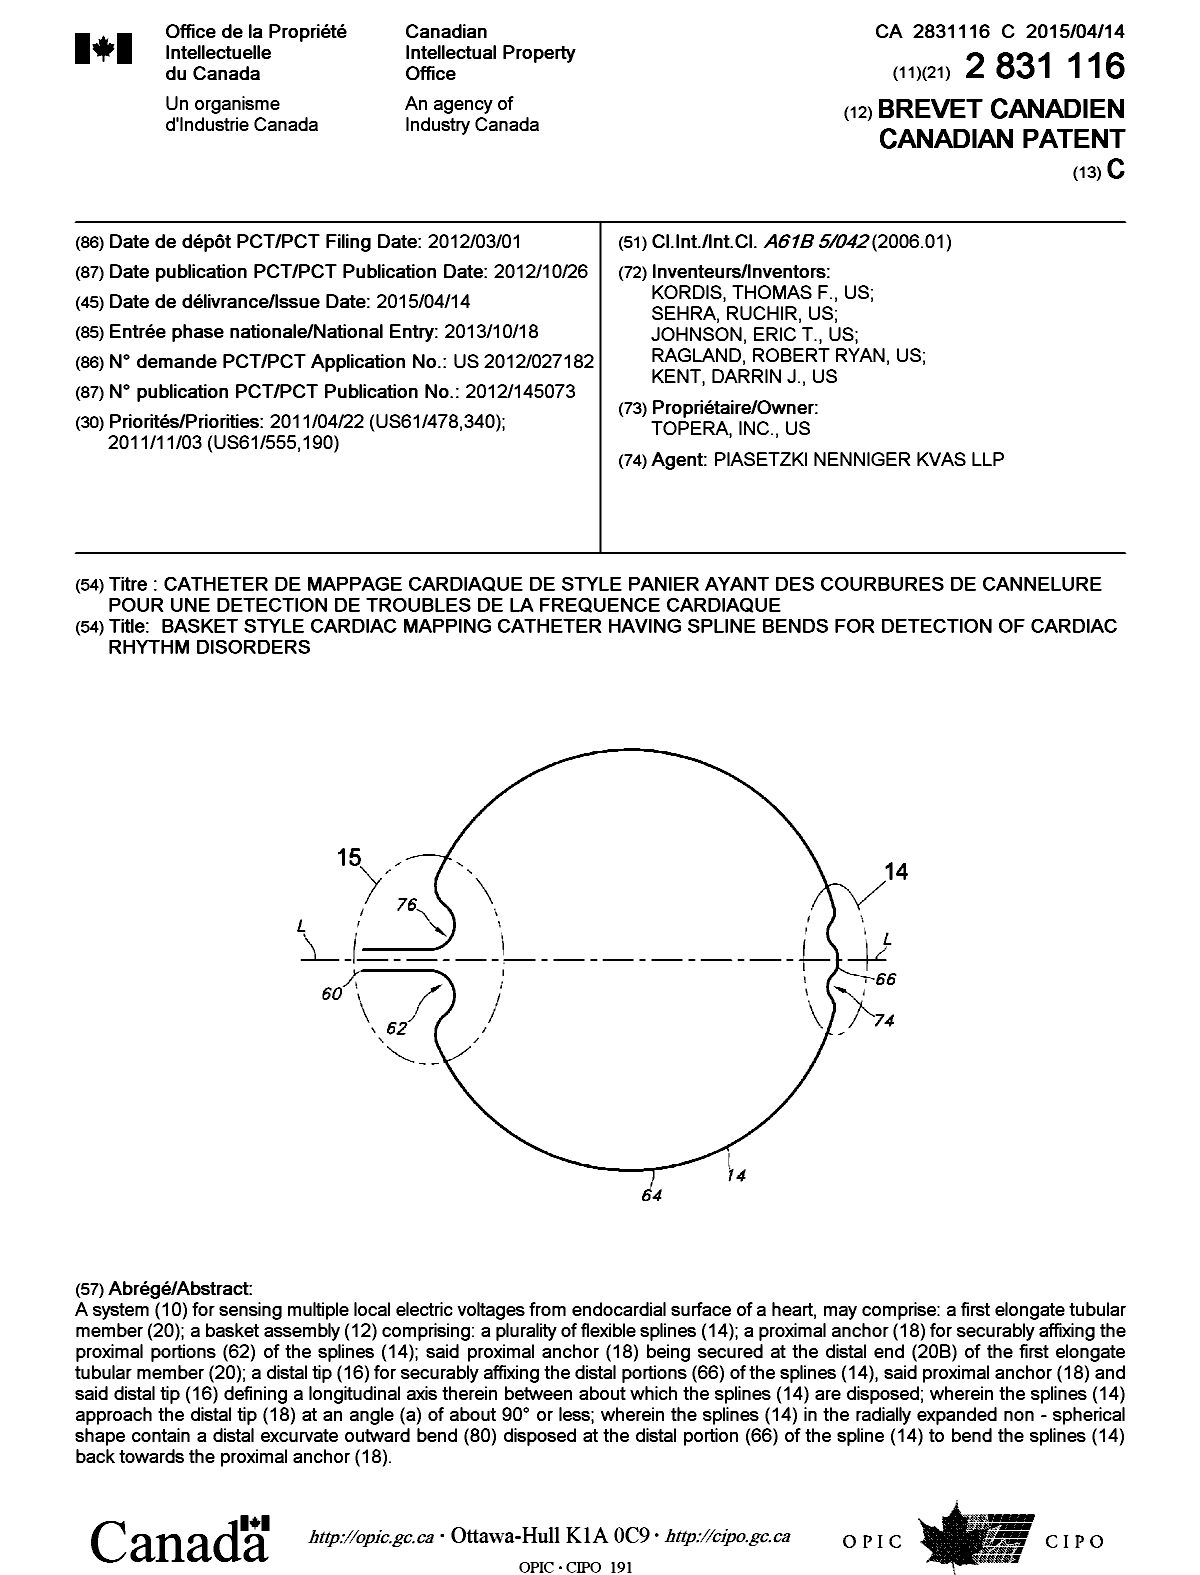 Document de brevet canadien 2831116. Page couverture 20150316. Image 1 de 1